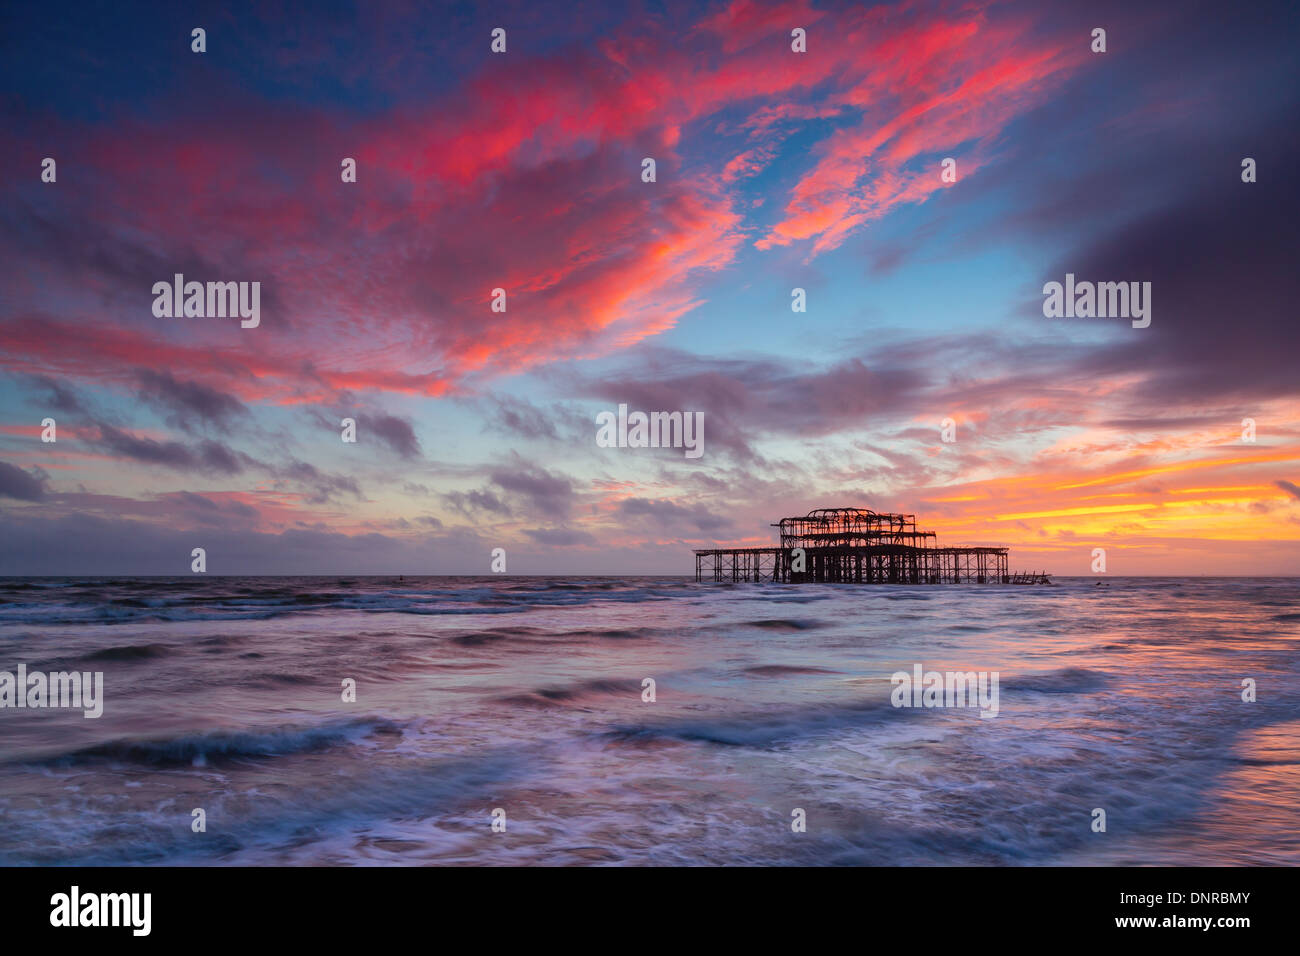 Brighton Pier West bei Sonnenuntergang, Sussex, UK. Langzeitbelichtung Stockfoto